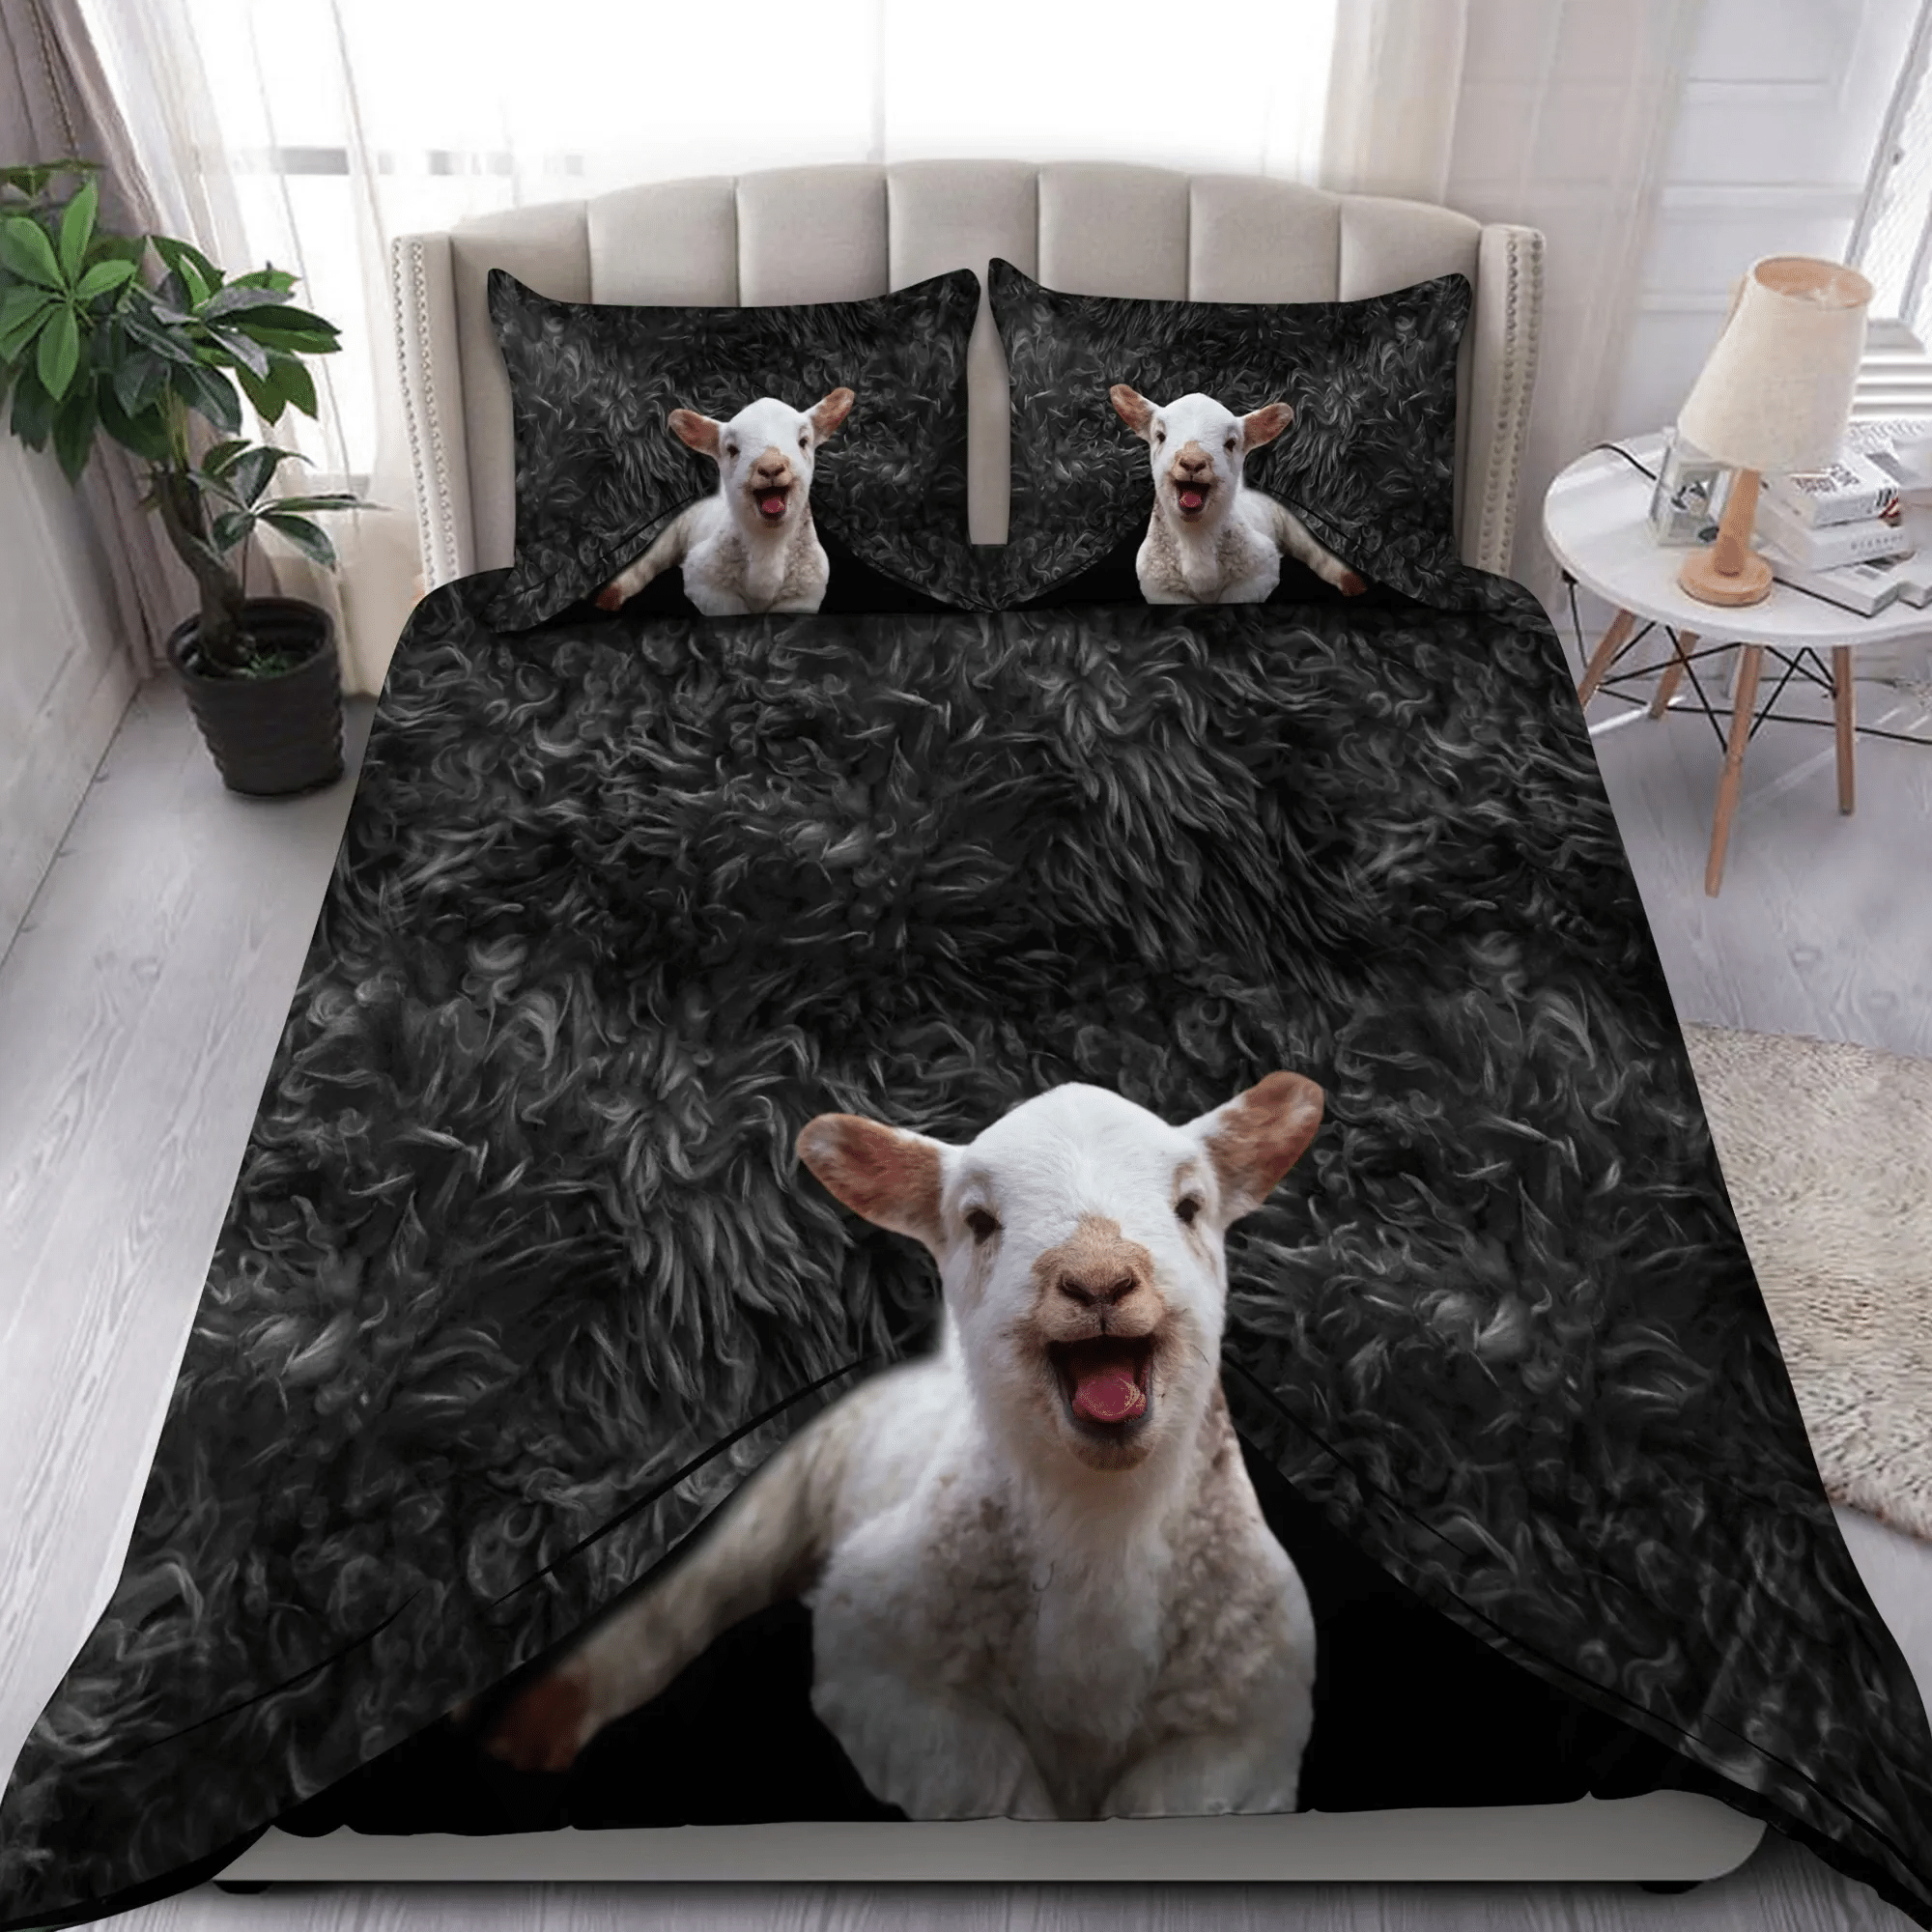 Lovely Black Sheep Bedding Set